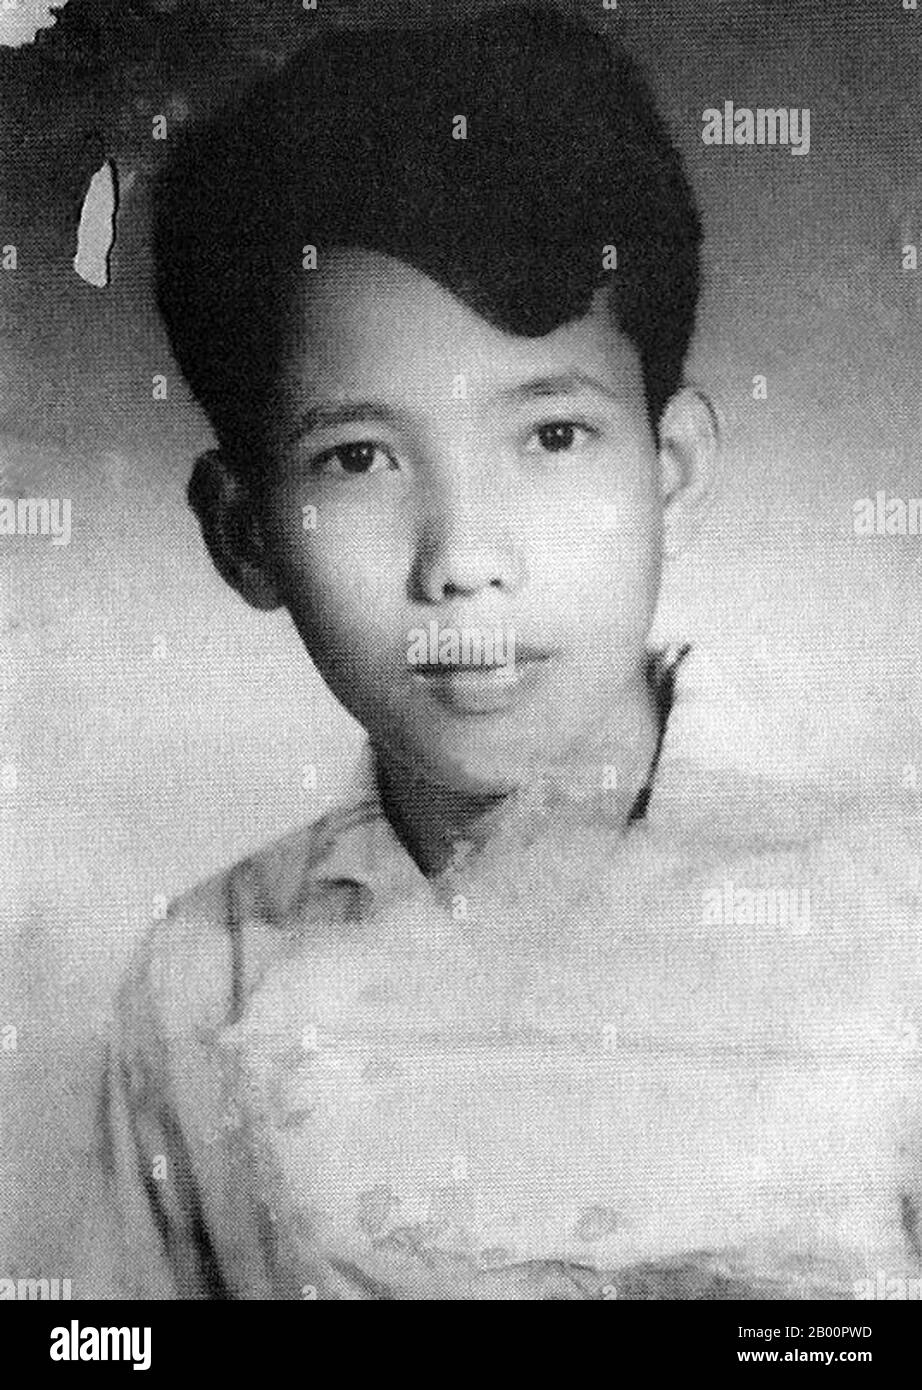 Cambodge: Kang Kek iew (camarade Duch), à l'âge de 17 ans. Kang Kek iew ou Kaing Kek Iev, Kaing Guek Eav (camarade Duch ou Deuch), un sino-khmer du nom chinois Hang PIN, est né le 17 novembre 1942 dans le village de Choyaot, sous-district de Kampong Chen, province de Kampong Thom. Il est surtout connu pour avoir dirigé la branche spéciale des Khmers rouges (Santebal) et dirigé le tristement célèbre camp de la prison de Tuol Sleng (S-21) à Phnom Penh. Premier dirigeant khmer rouge jugé par les chambres extraordinaires des tribunaux cambodgiens pour les crimes du régime, il a été reconnu coupable de crimes contre l'humanité, de meurtres et de torture Banque D'Images